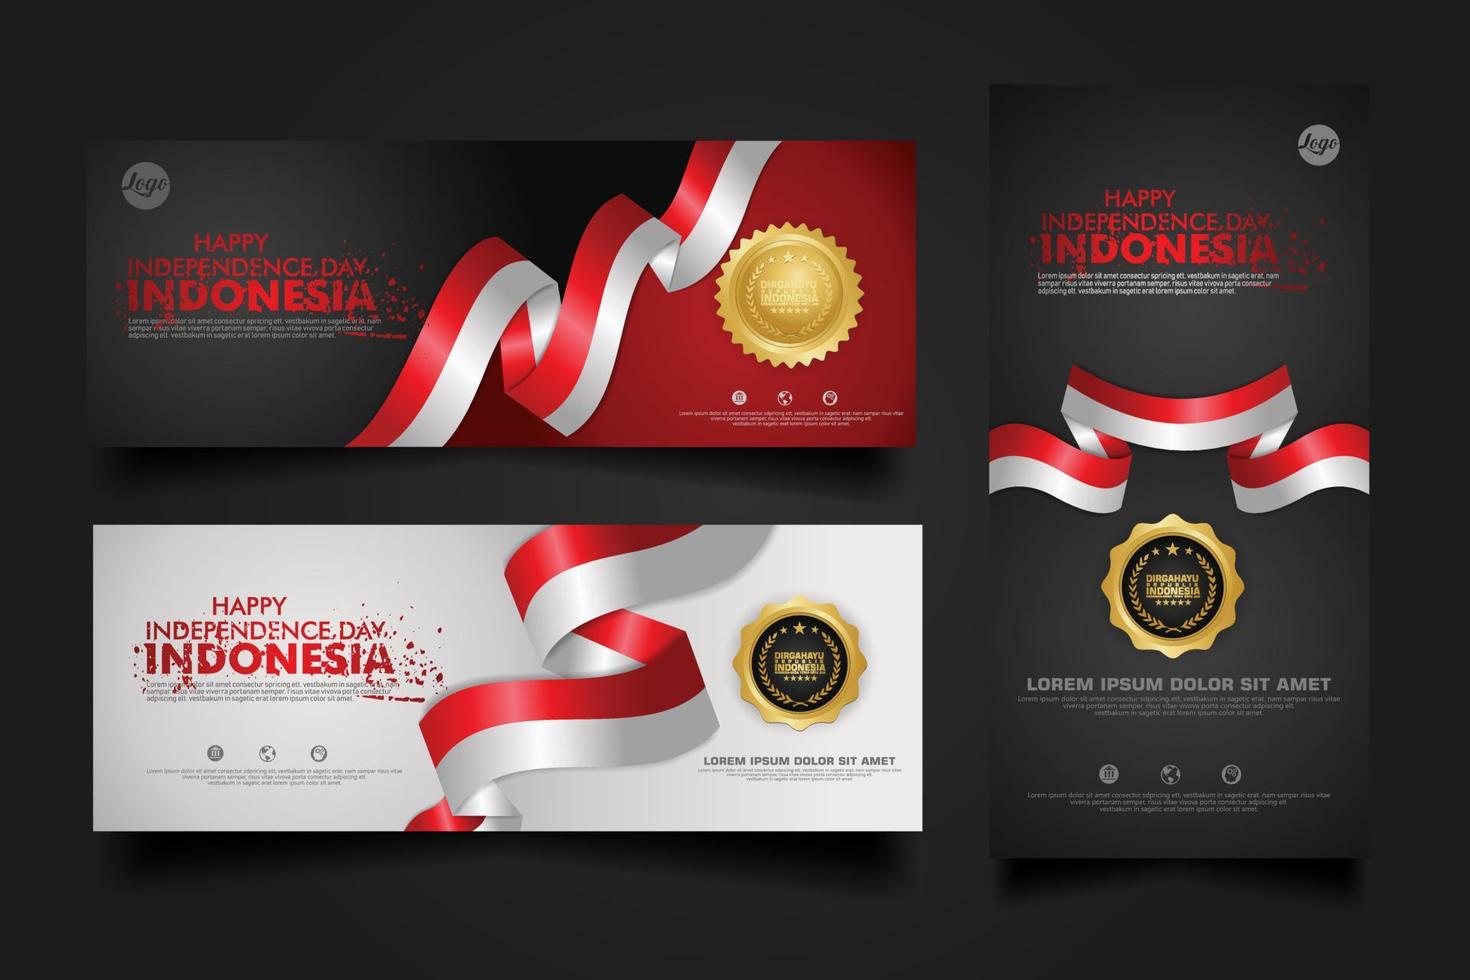 Indonesia Independence Day Celebration, banner set Design Vector Template Illustration